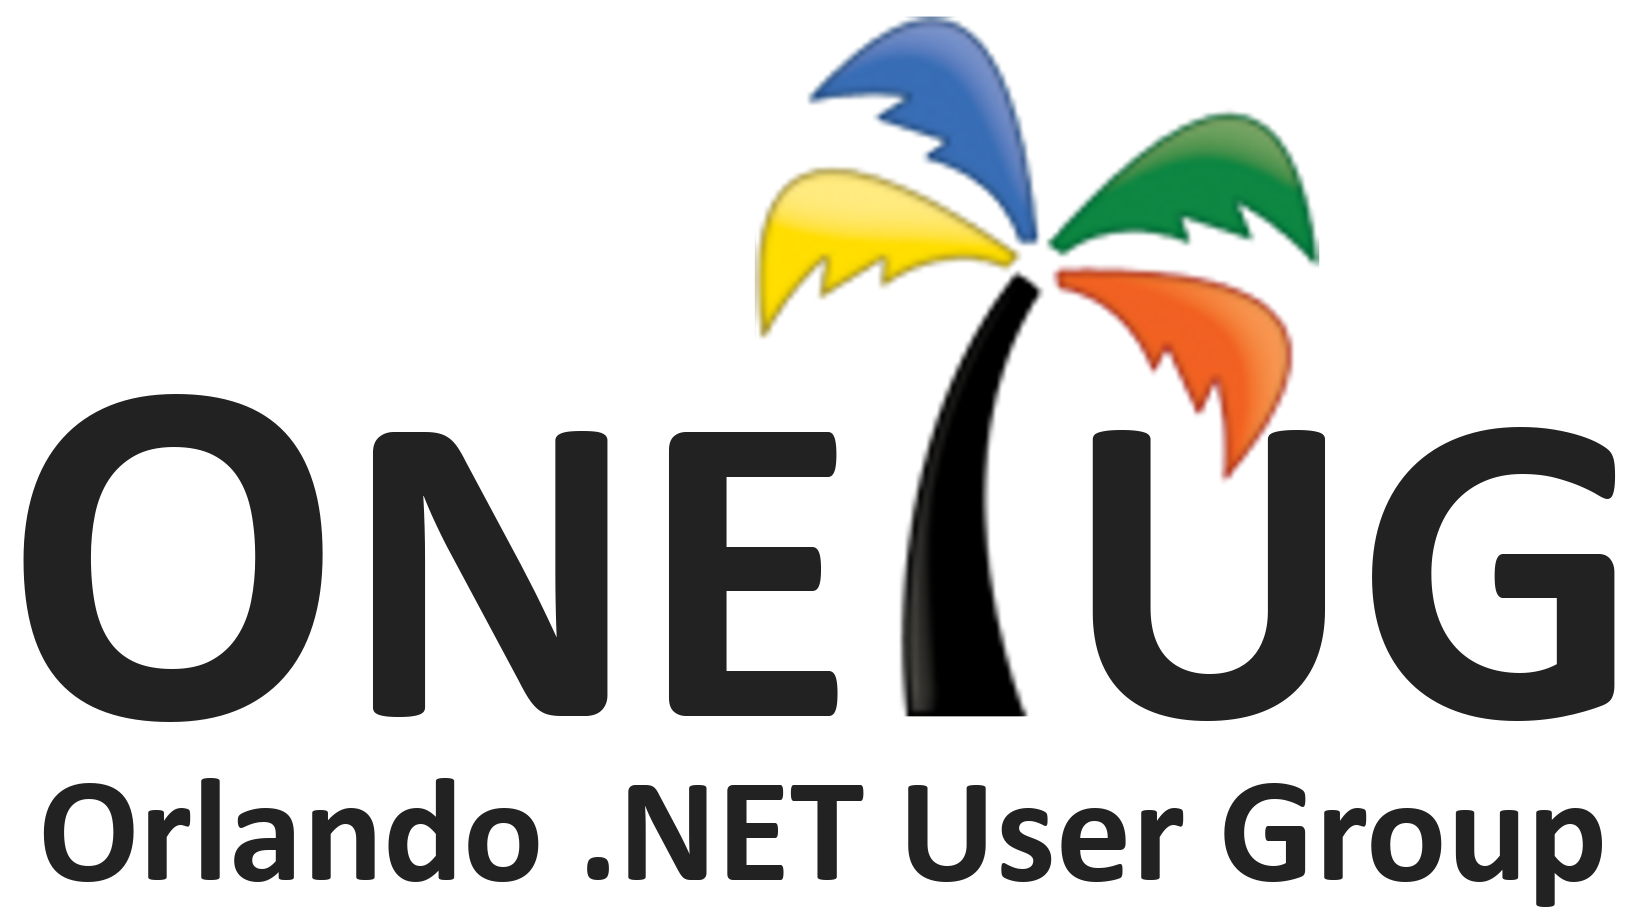 ONETUG logo